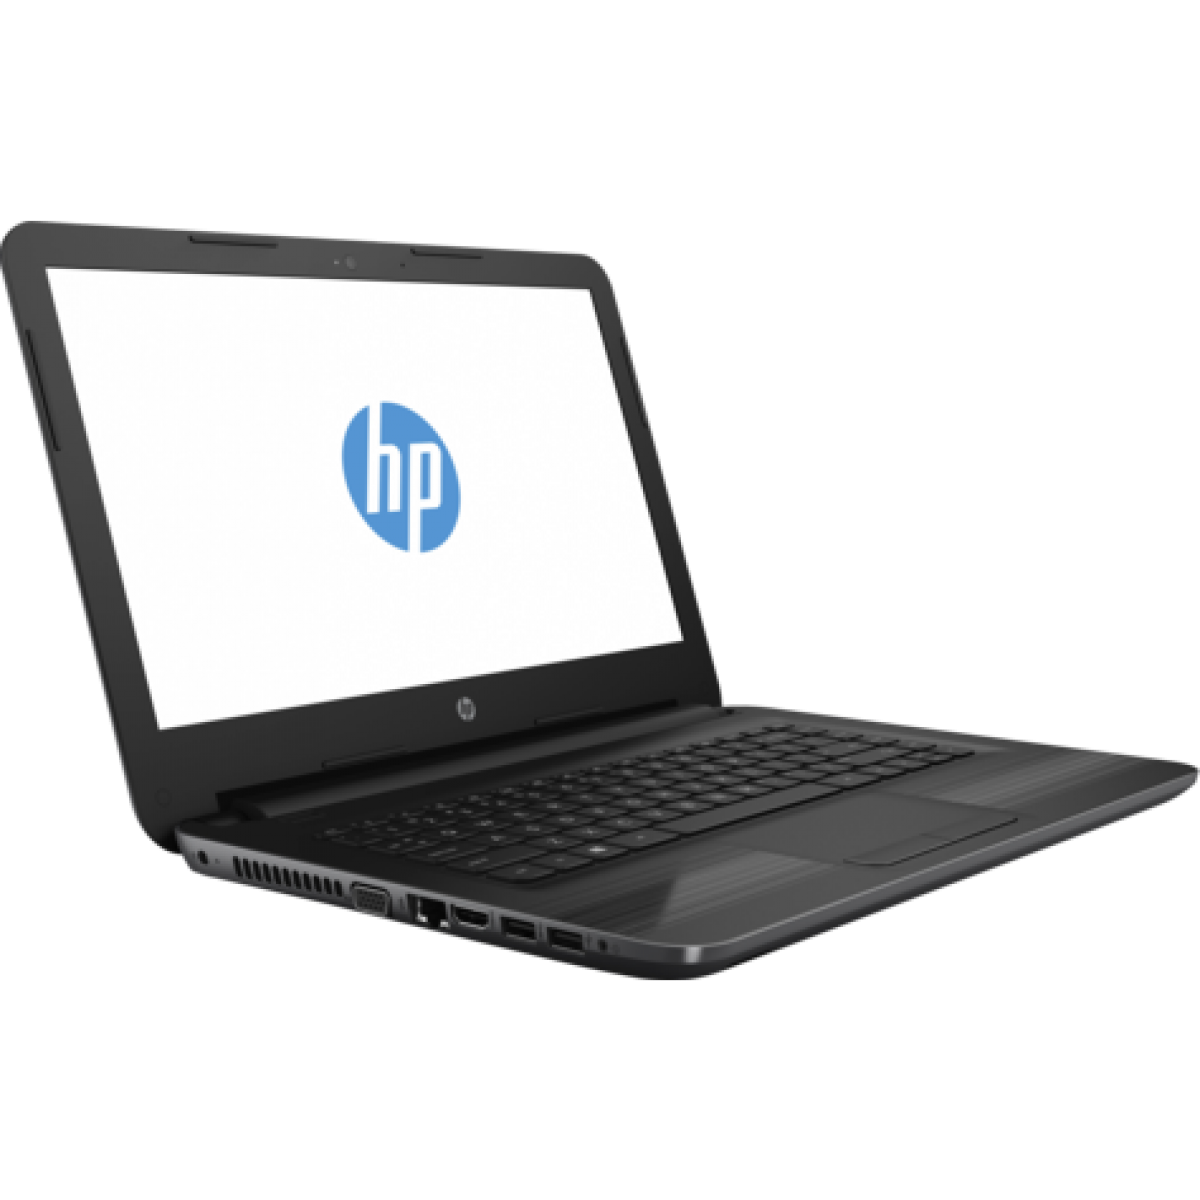 ไฟล์ HP แล็ปท็อป PNG